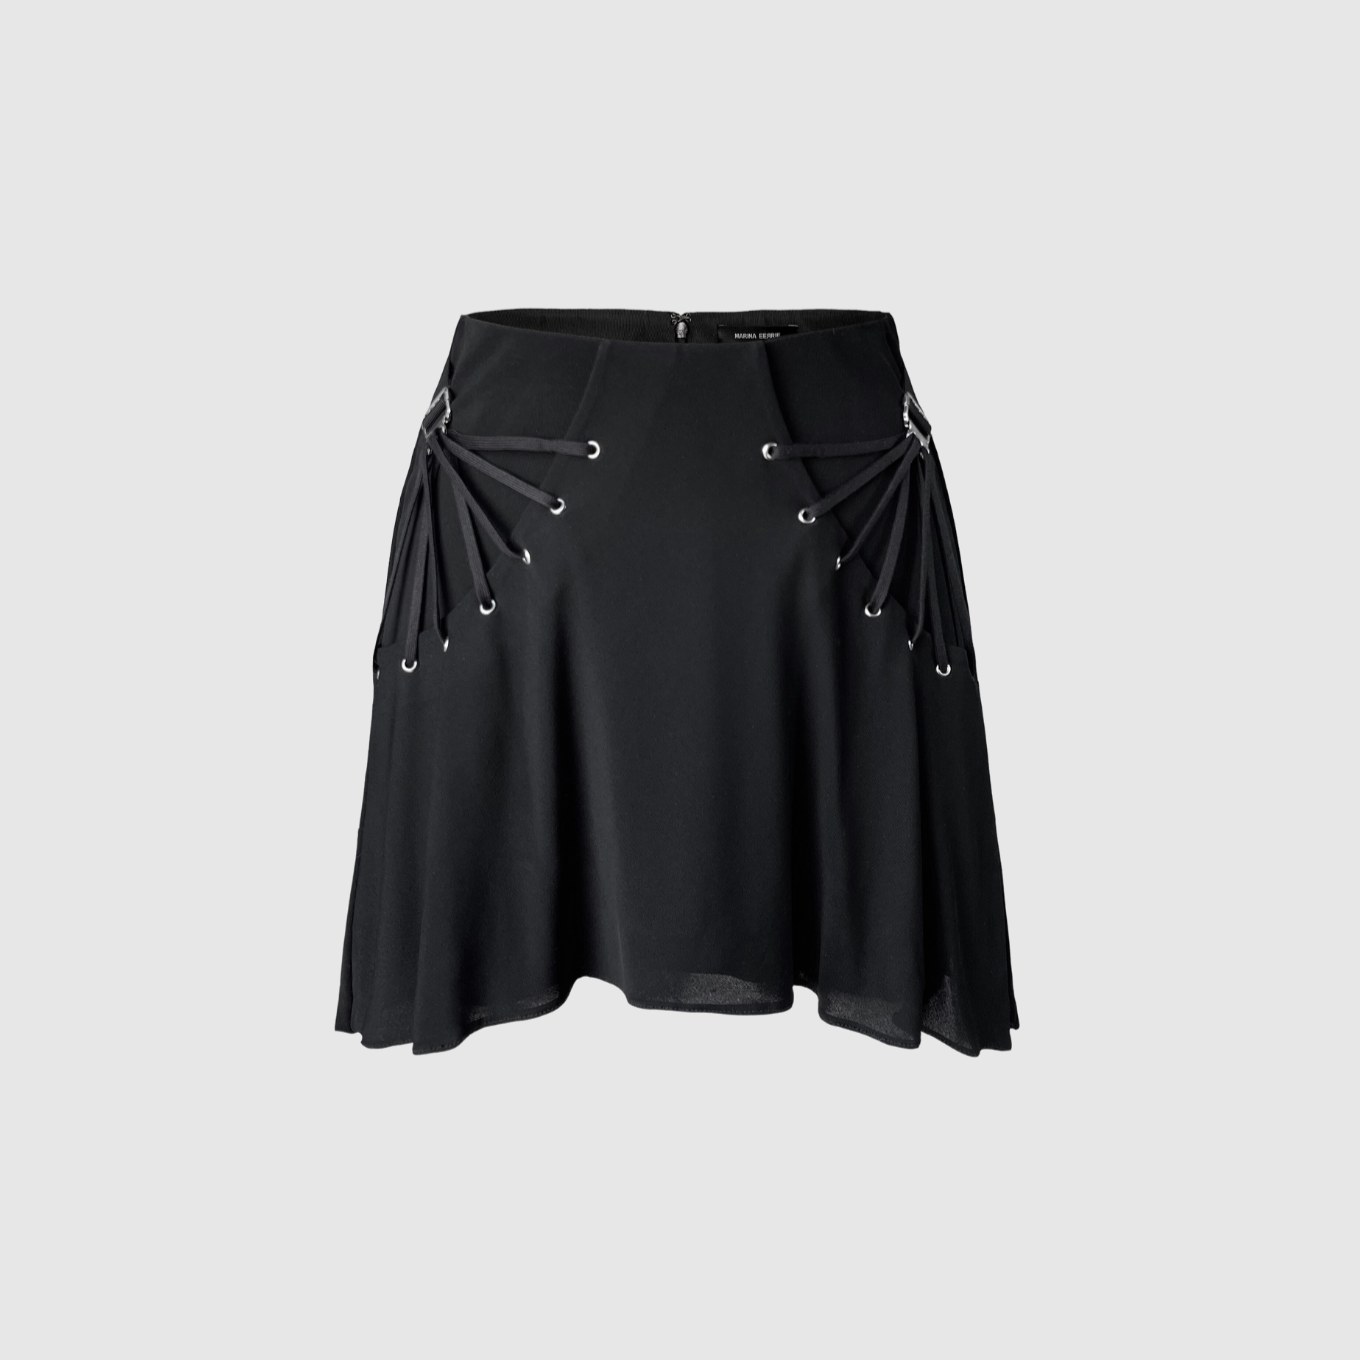 Black Fan Laced Skirt